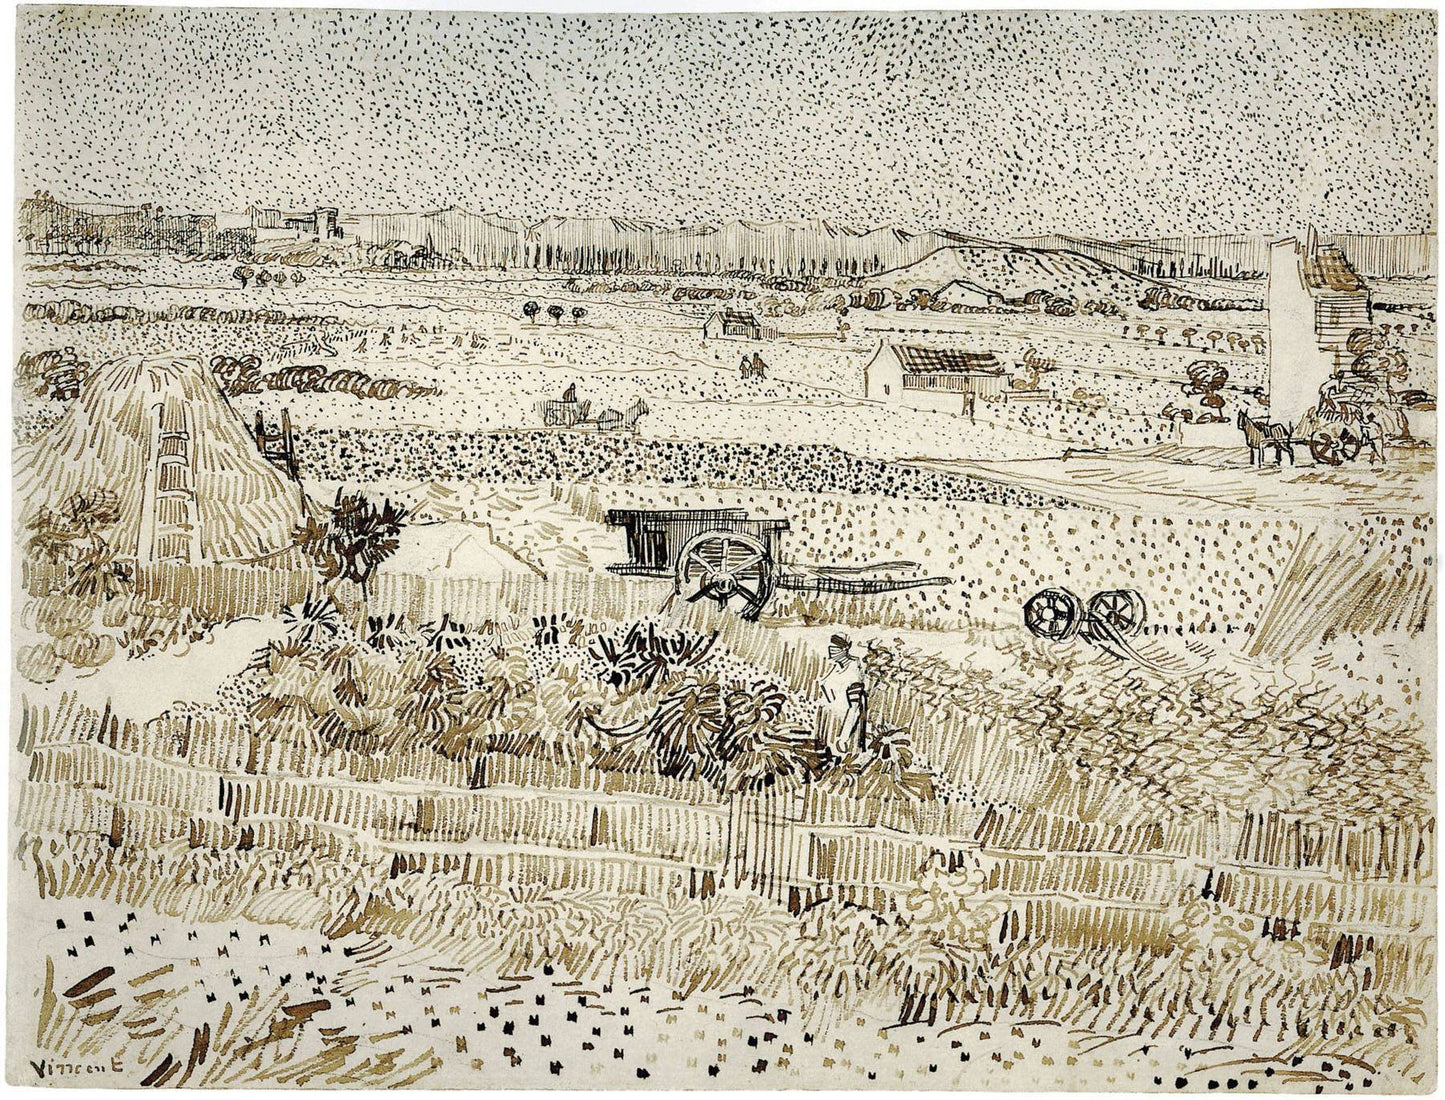 Harvest - The Plain of La Crau, 1888